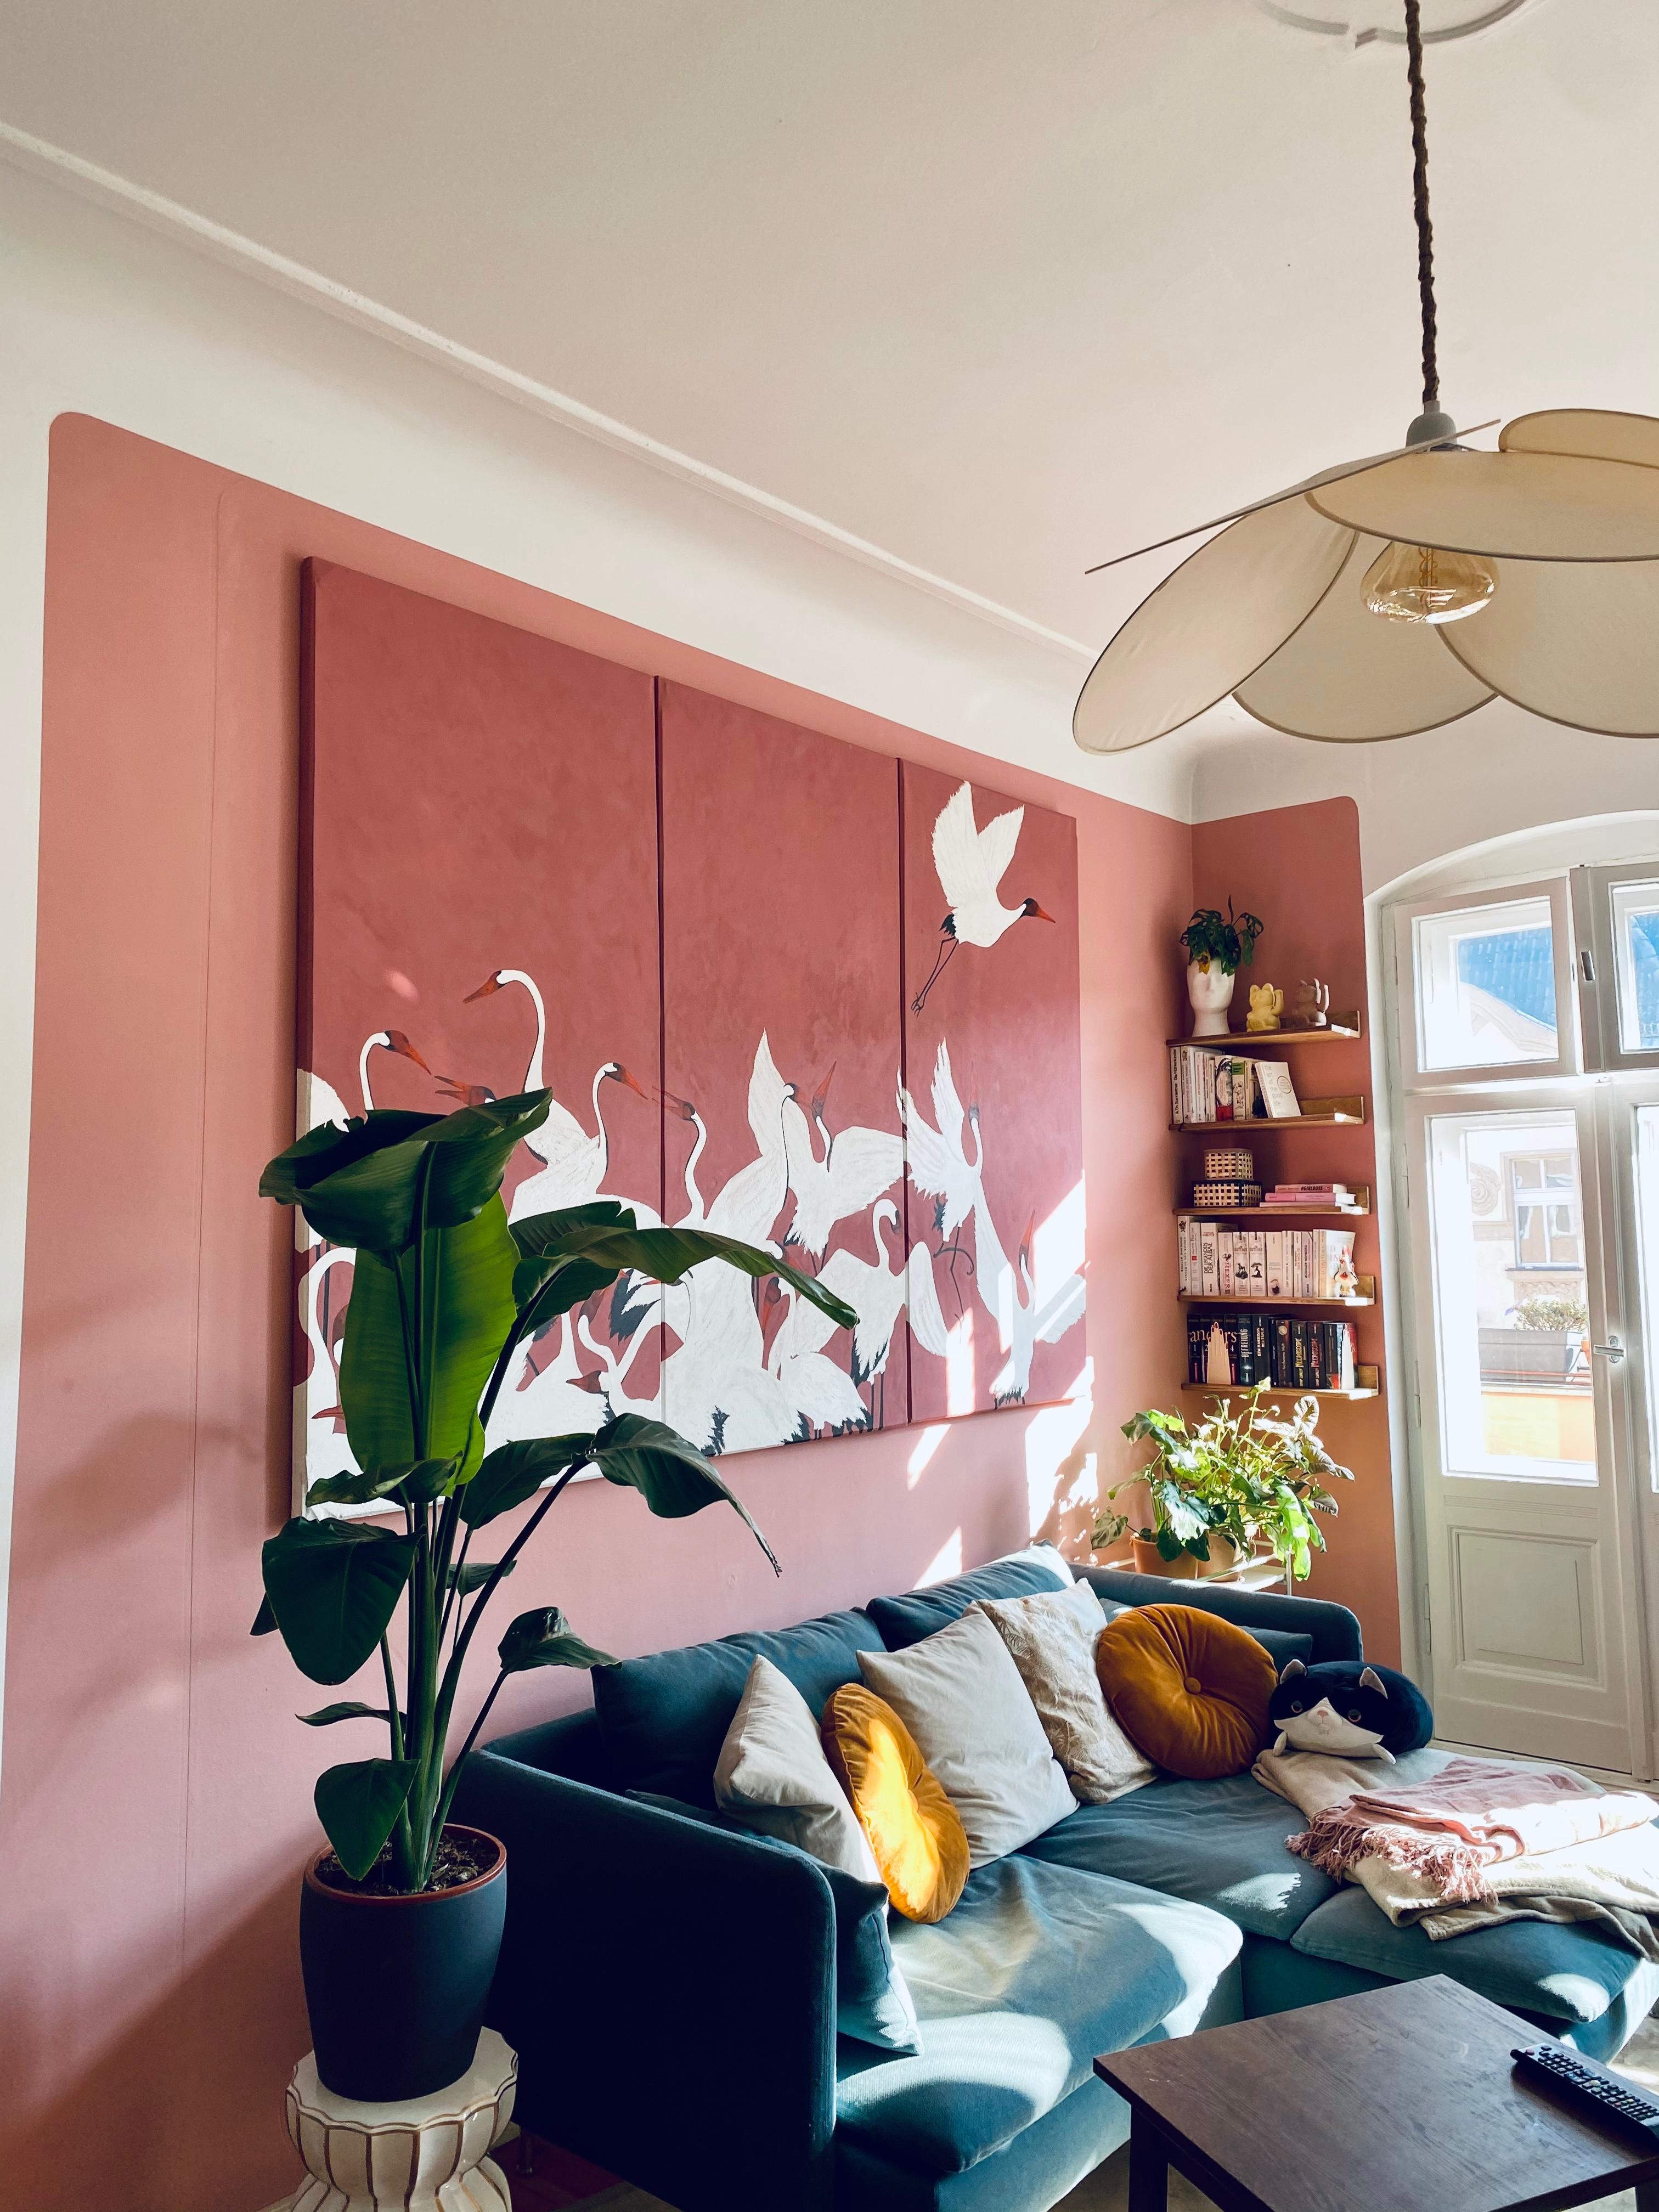 Vogelfrei im Wohnzimmer.Neues Bild zum Geburtstag #couchliebt #kunst #livingroom #pantone #art #wohnzimmer #wandfarbe